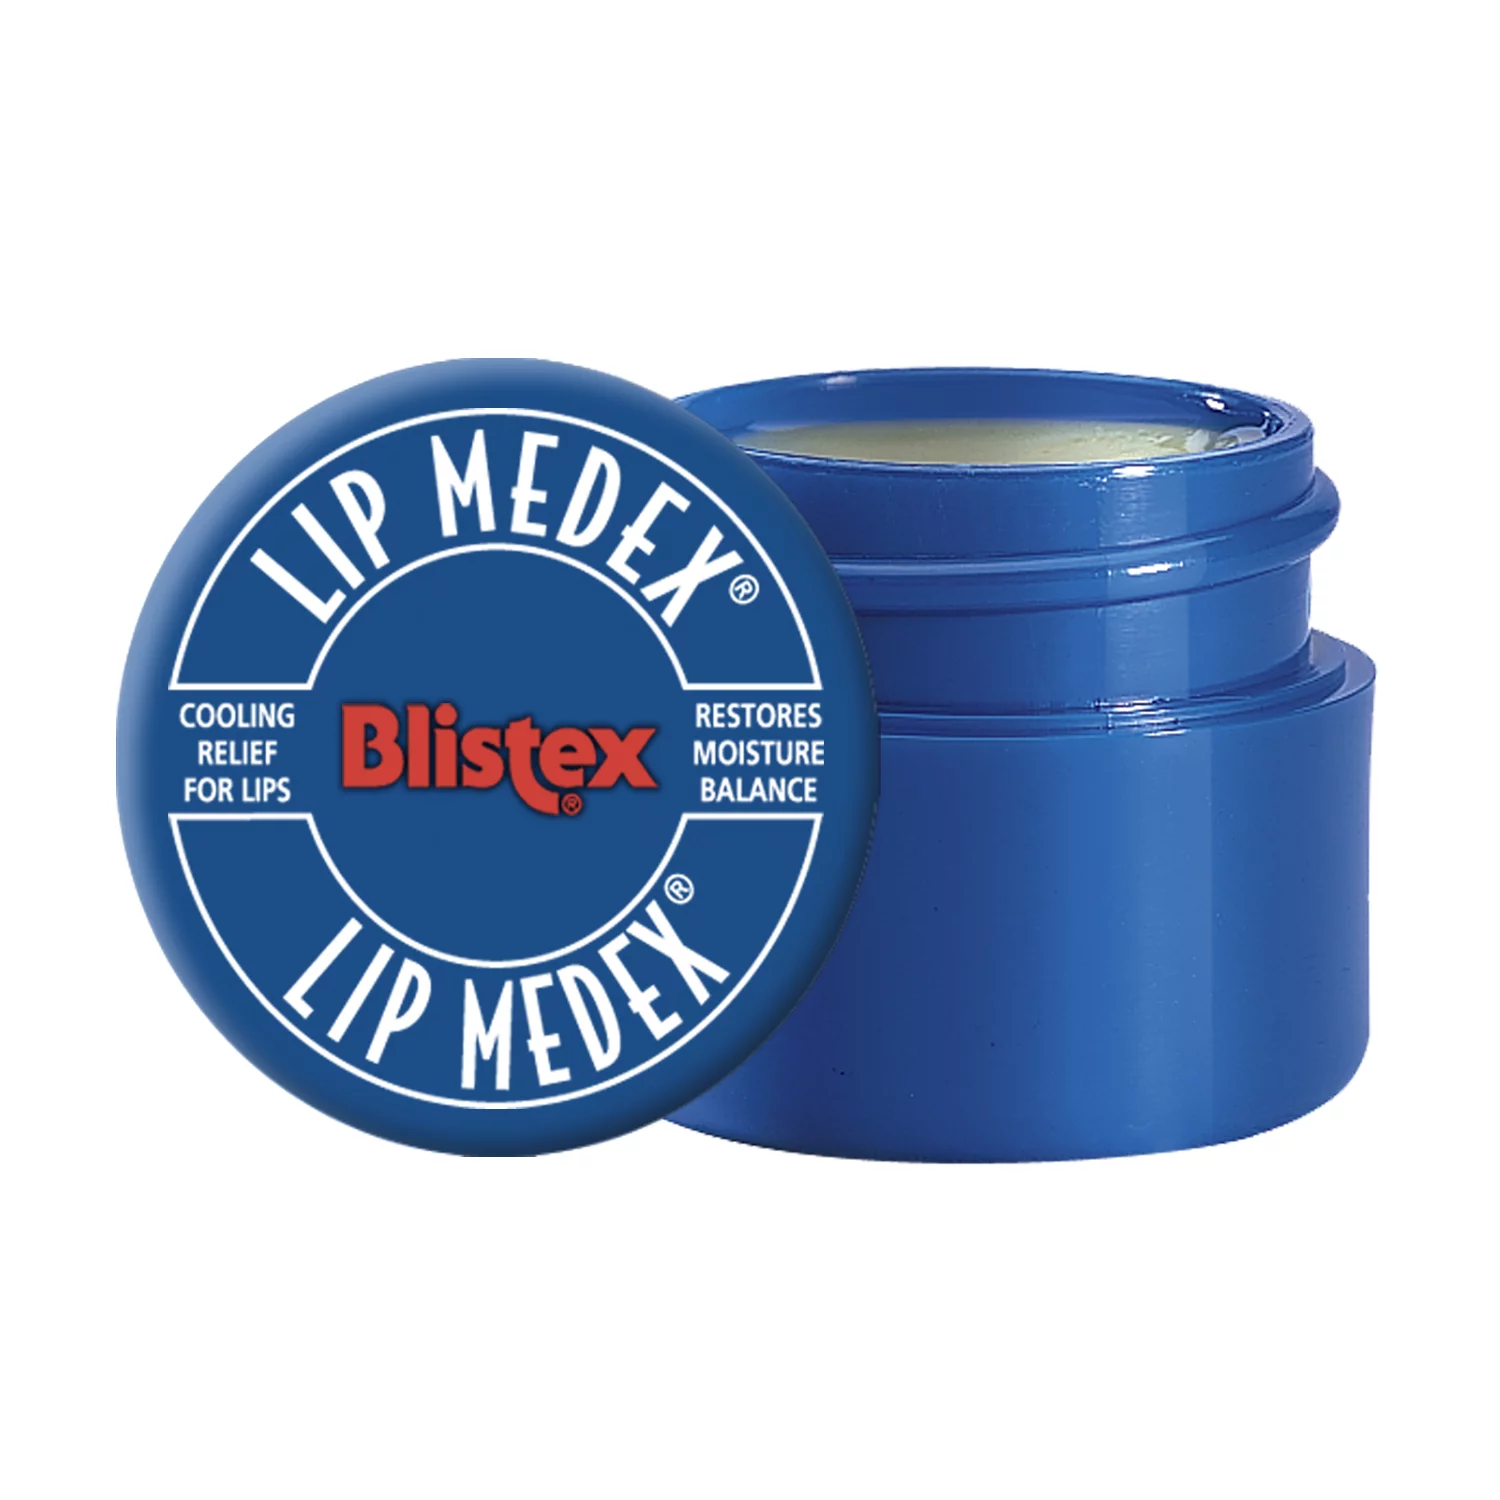 Blistex Lip Medex, 0.25 oz. Medicated Lip Balm Jar, One Count